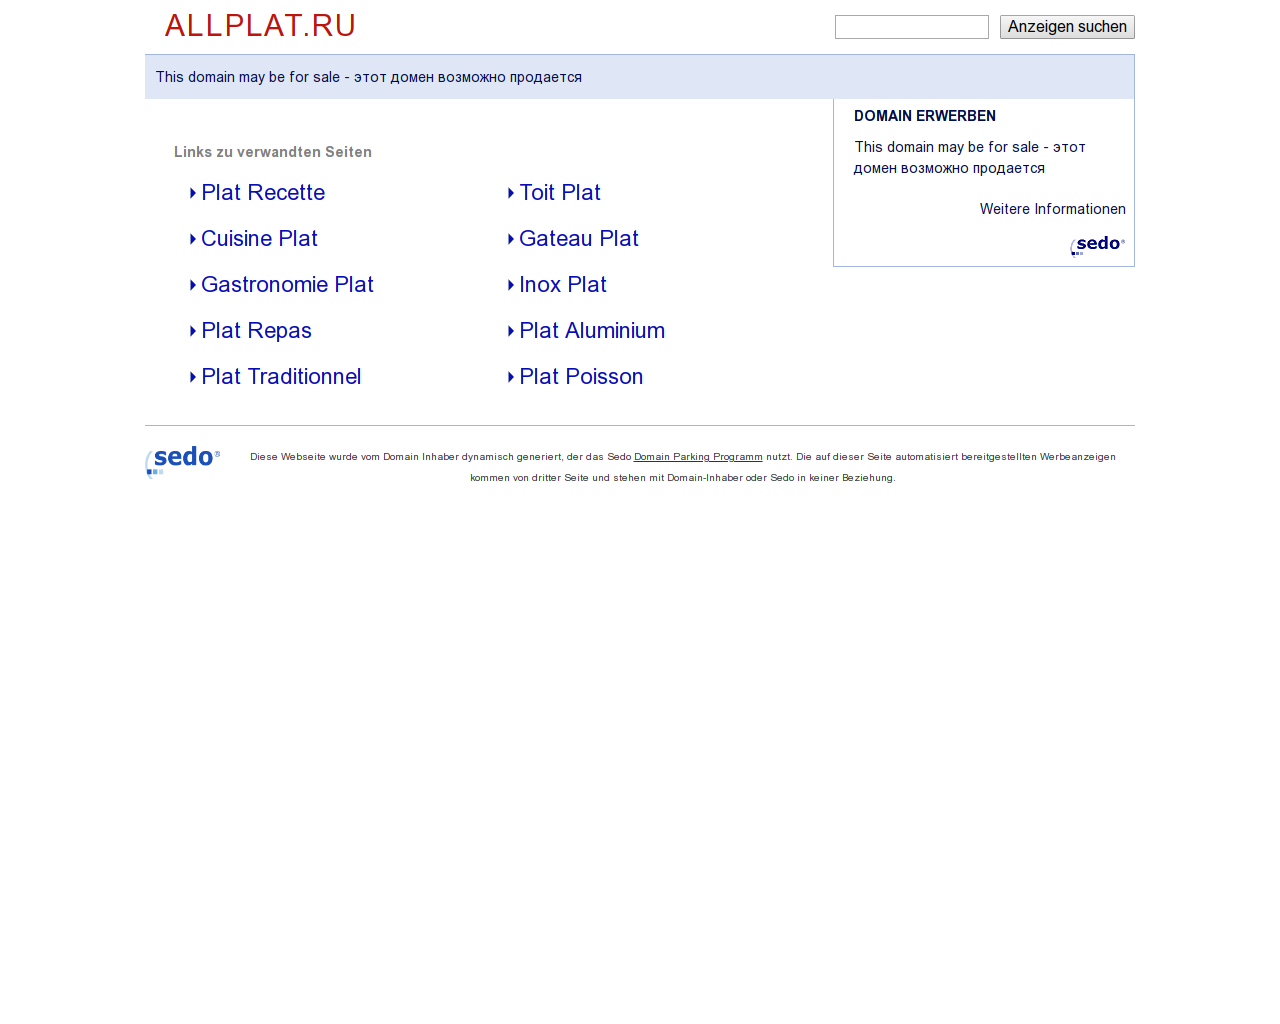 Изображение сайта allplat.ru в разрешении 1280x1024